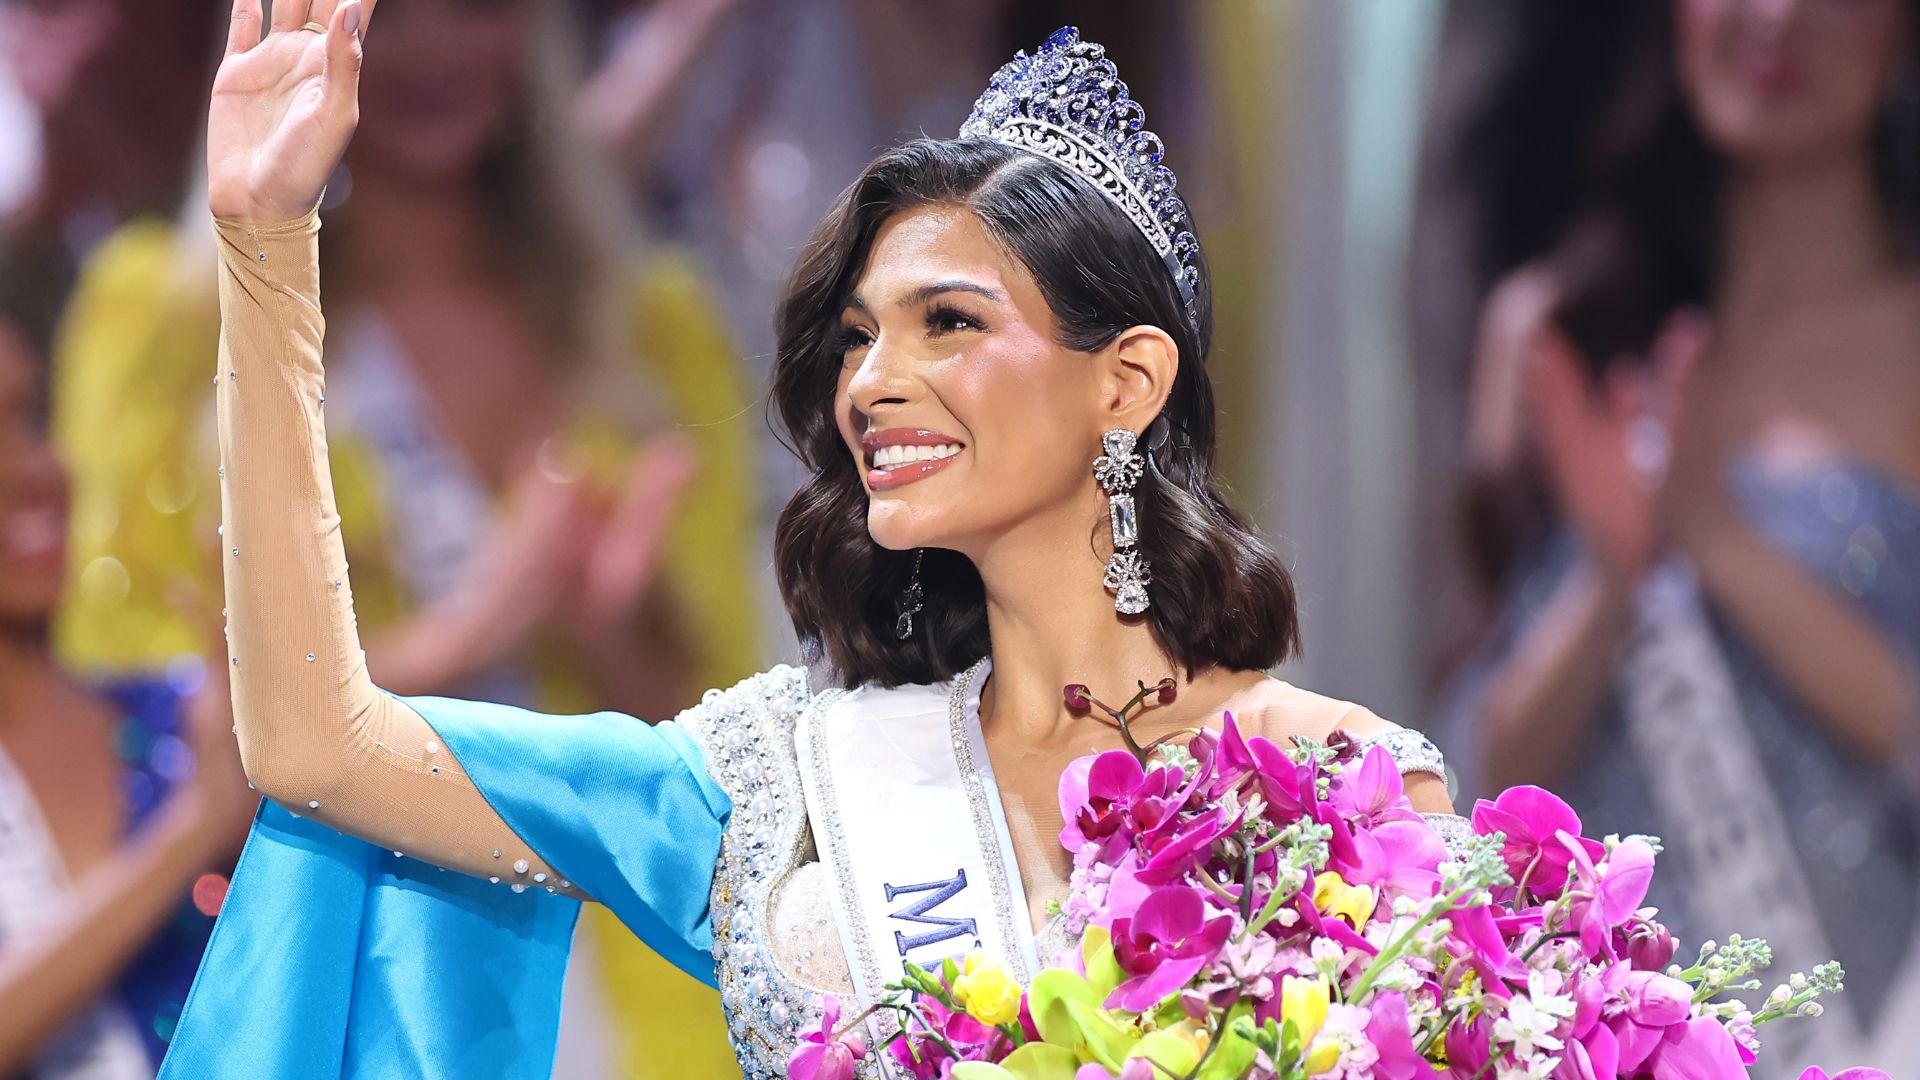 La nicaragüense Sheynnis Palacios fue coronada como la nueva Miss